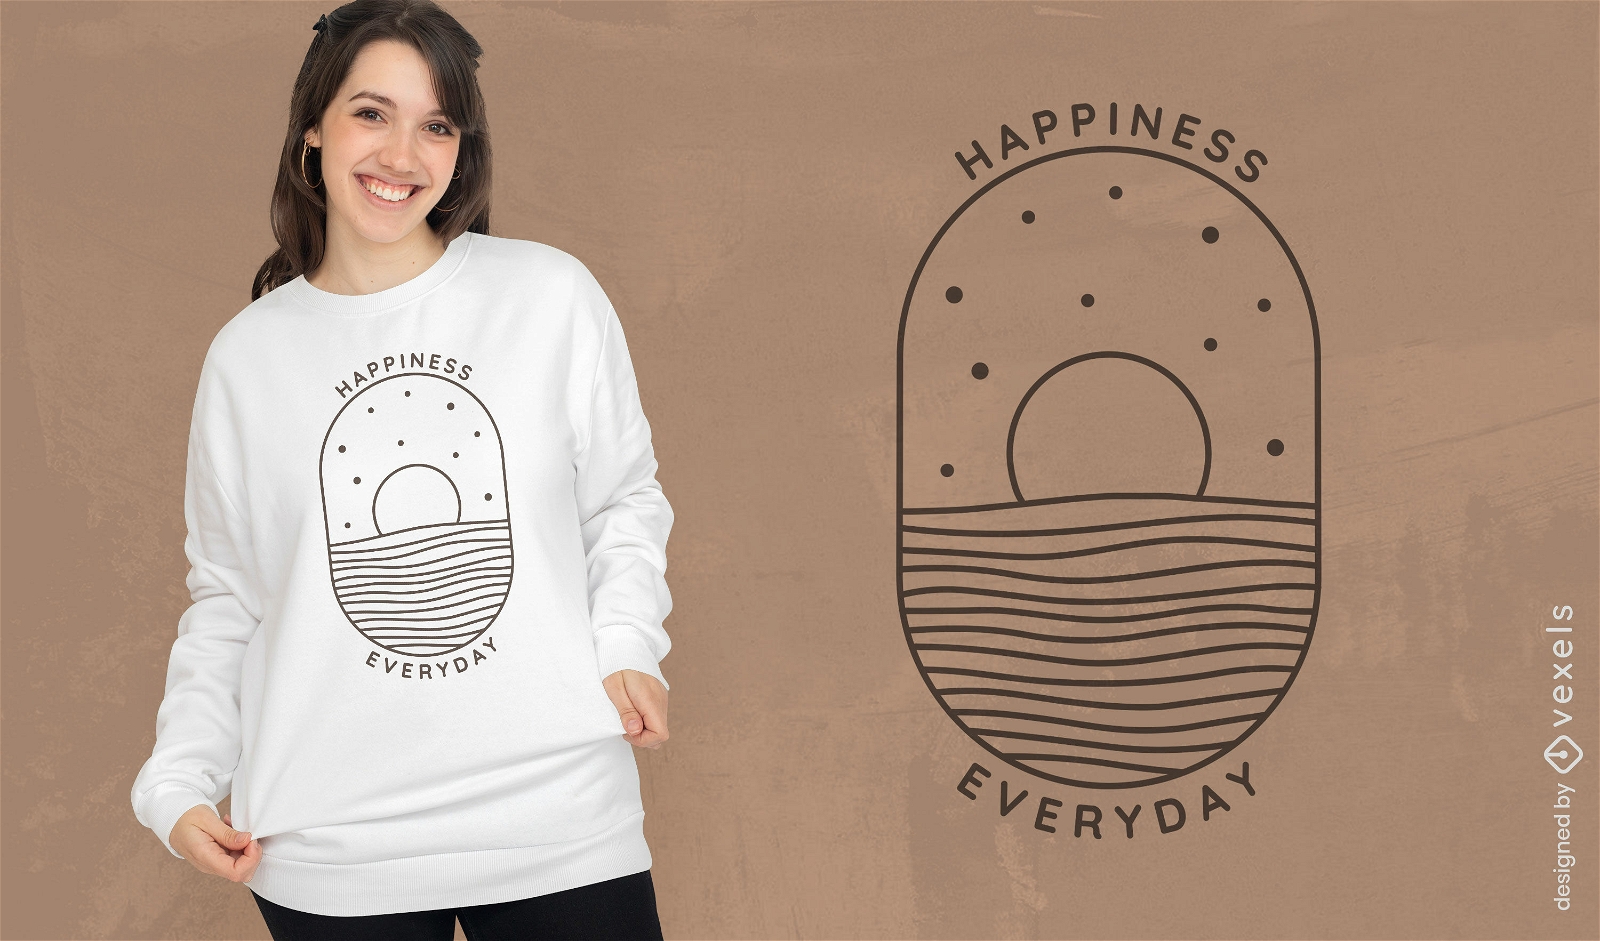 Diseño de camiseta de felicidad todos los días.